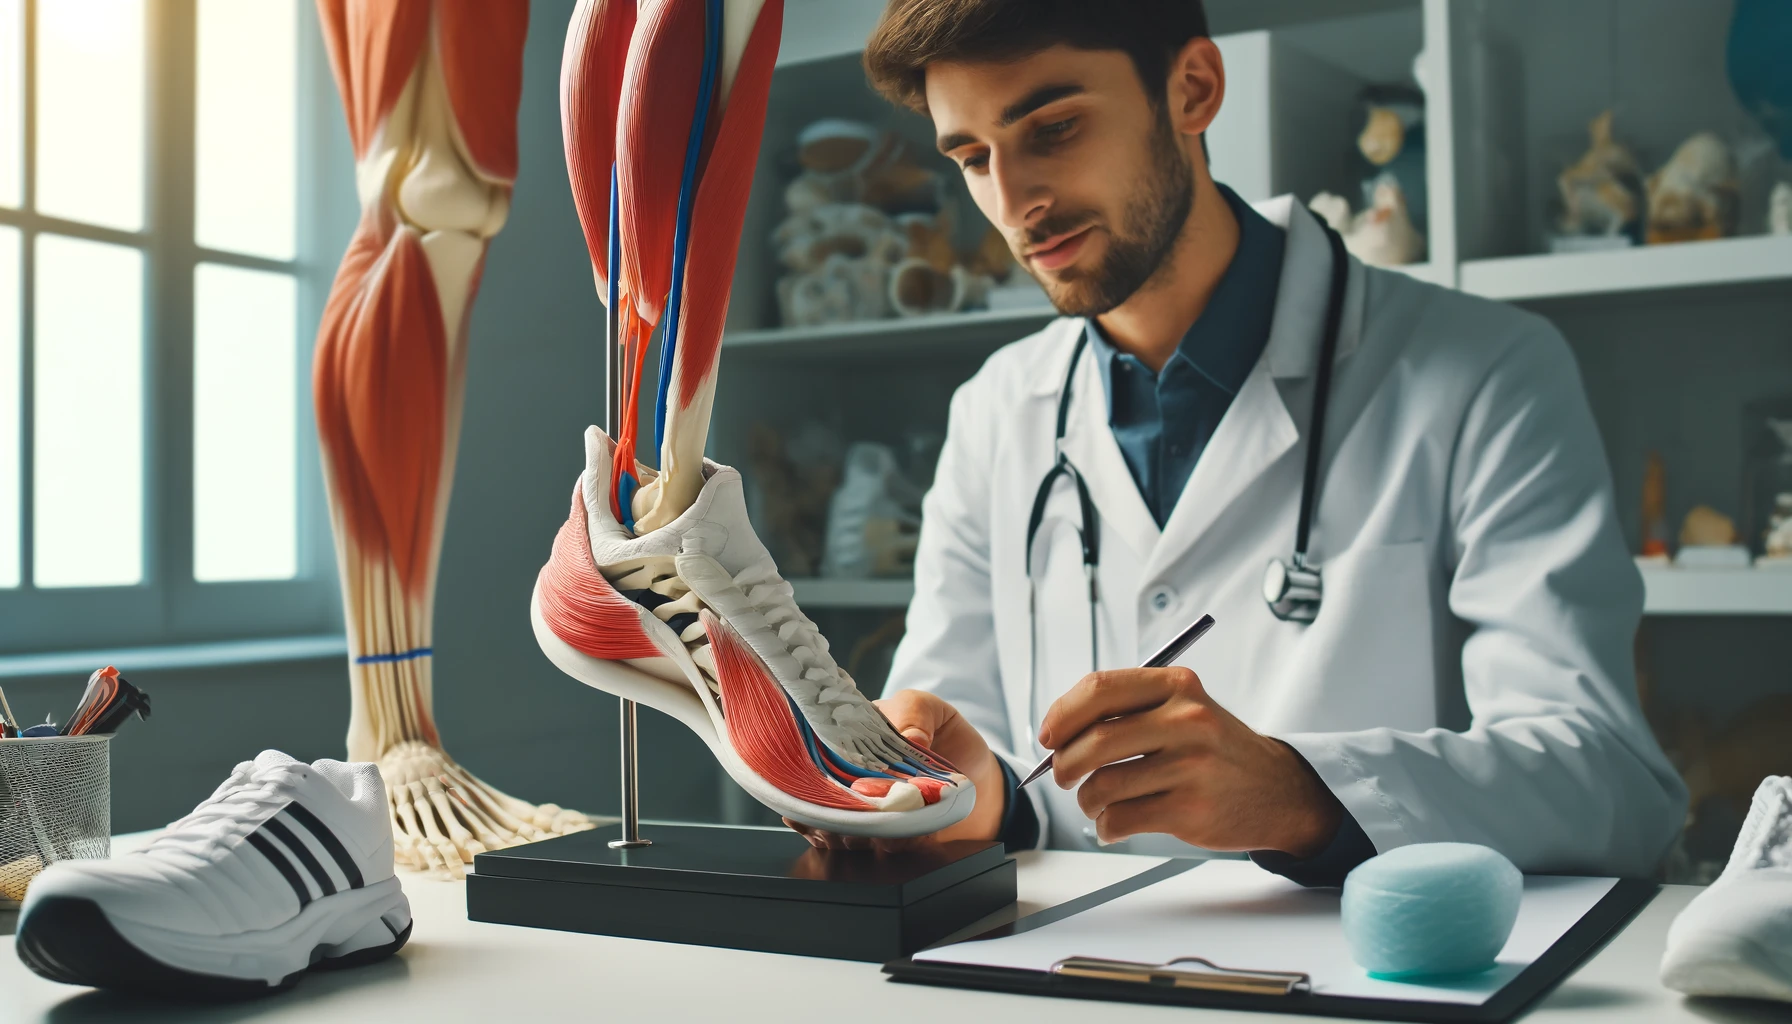 Orthopédiste sportif examinant un modèle anatomique du pied avec des semelles en gel à proximité.